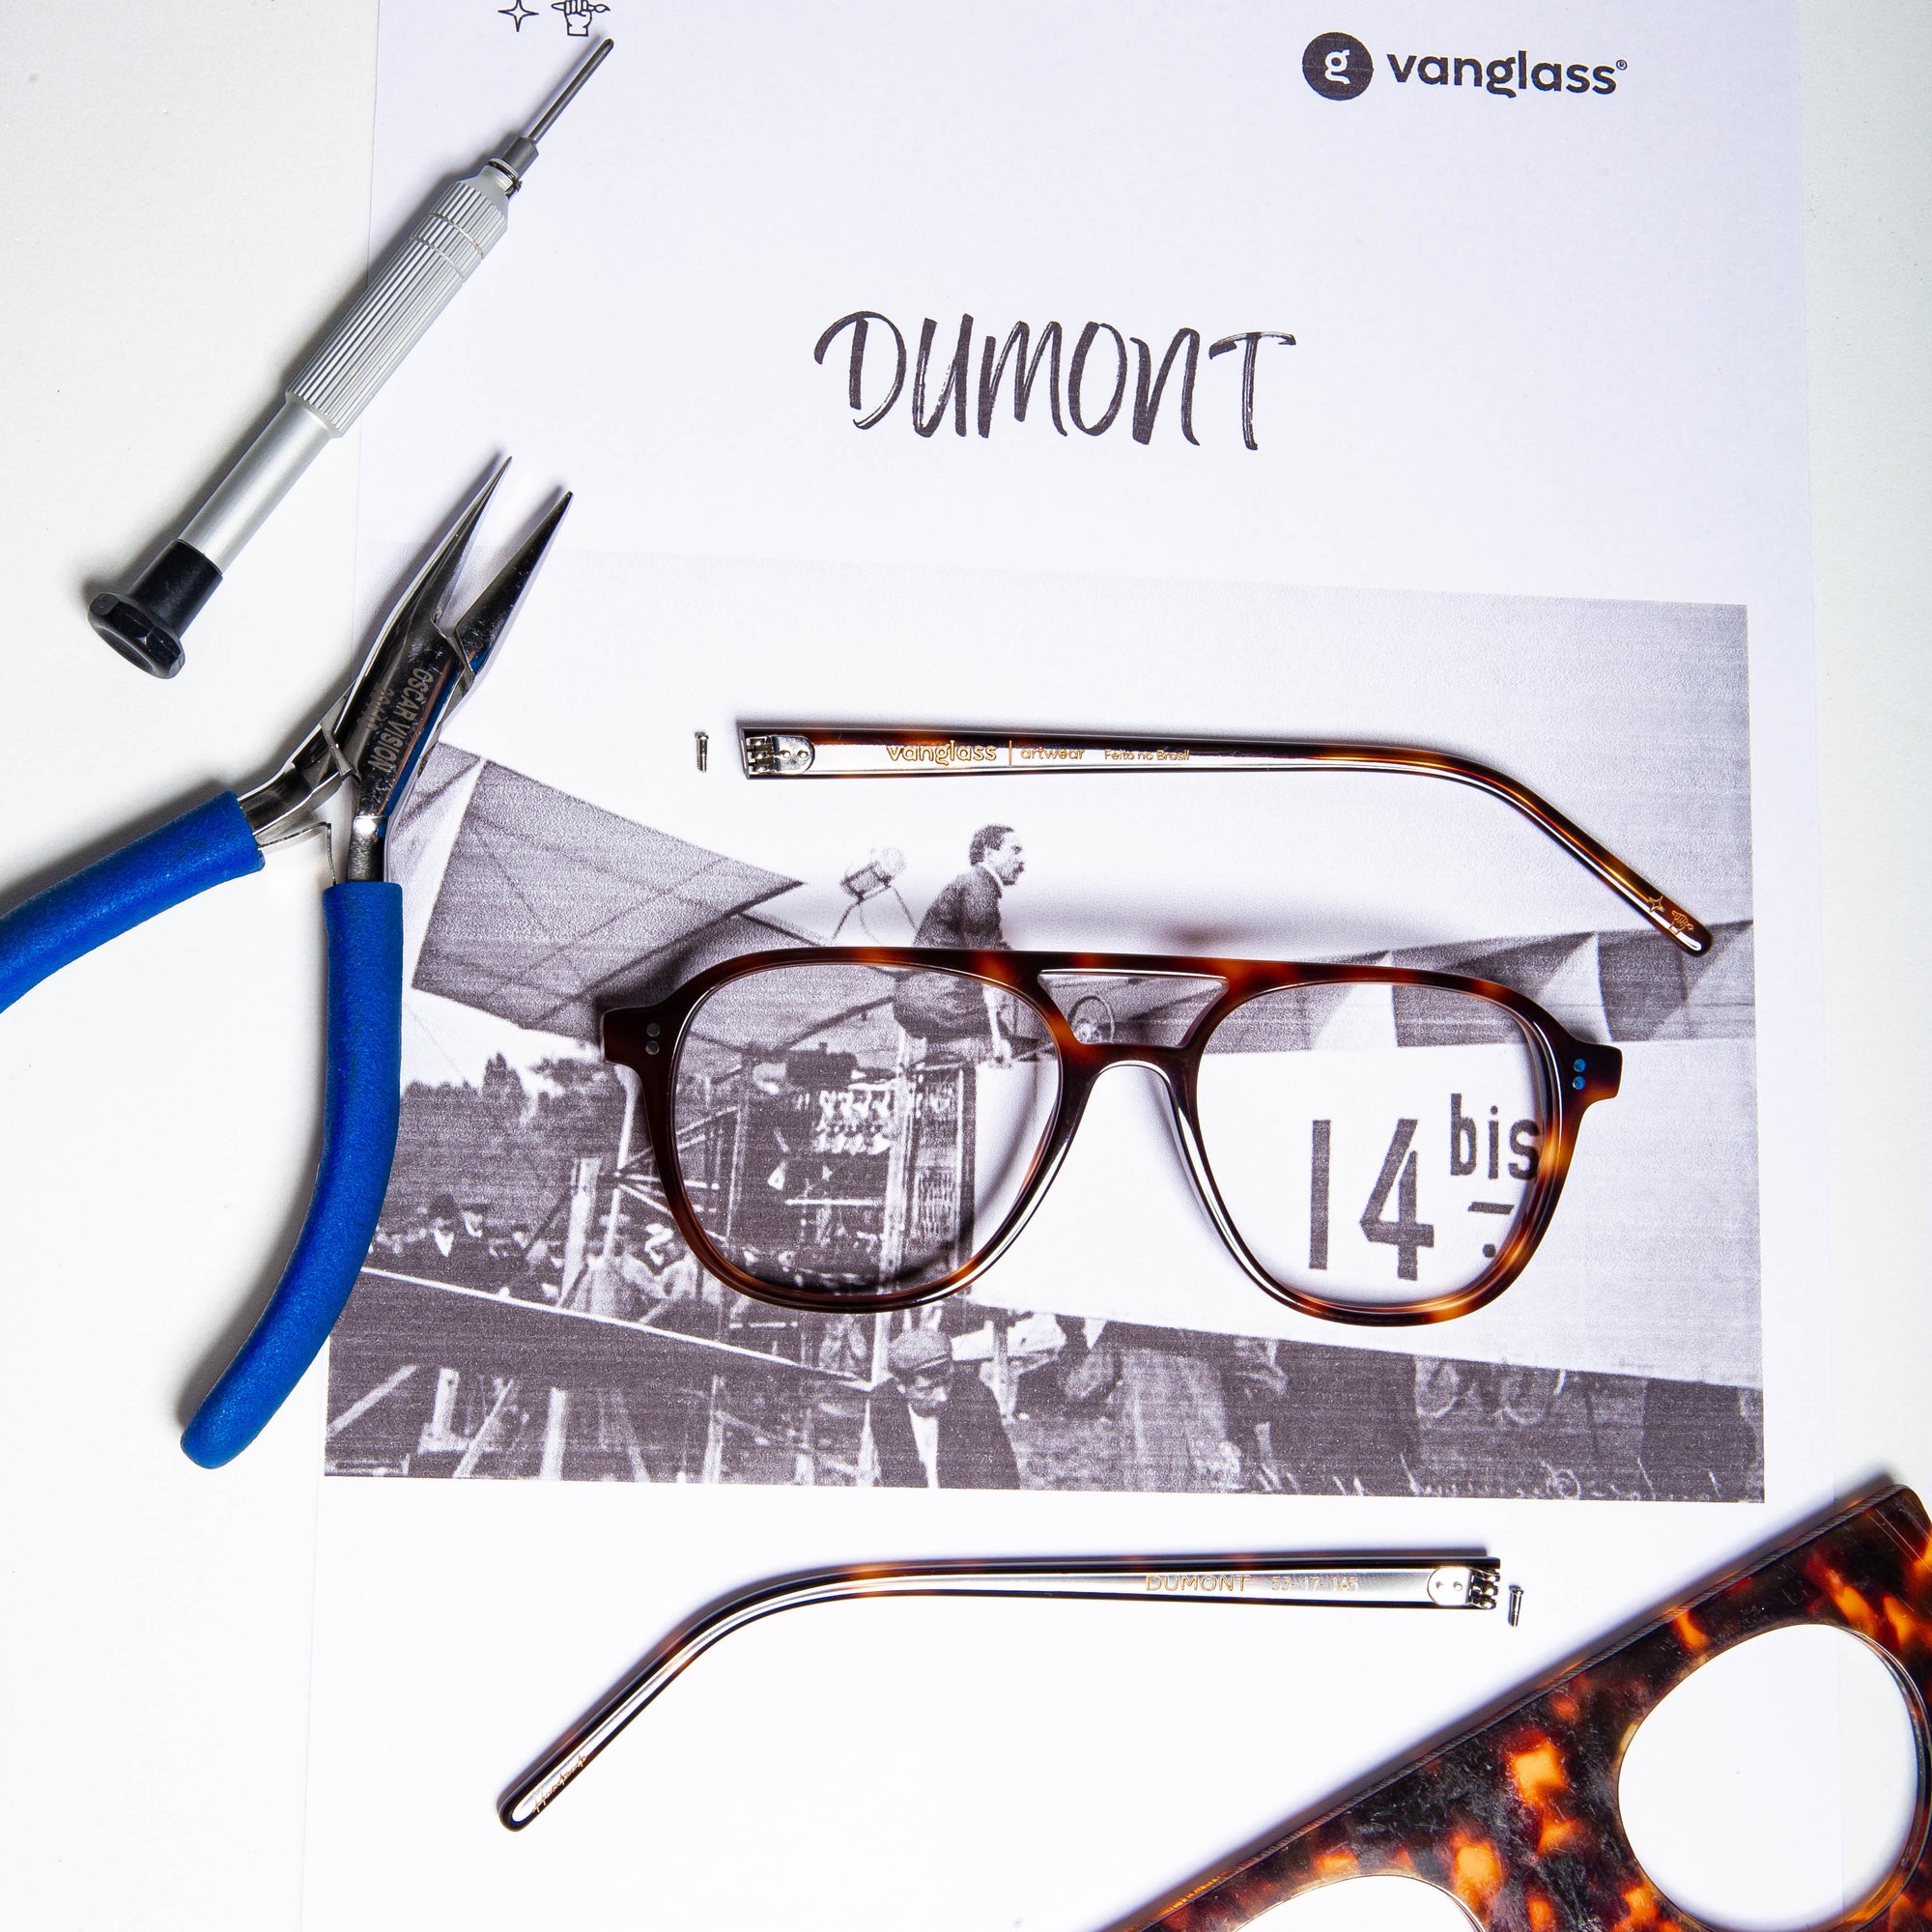 Dumont, Vanglass Eyewear